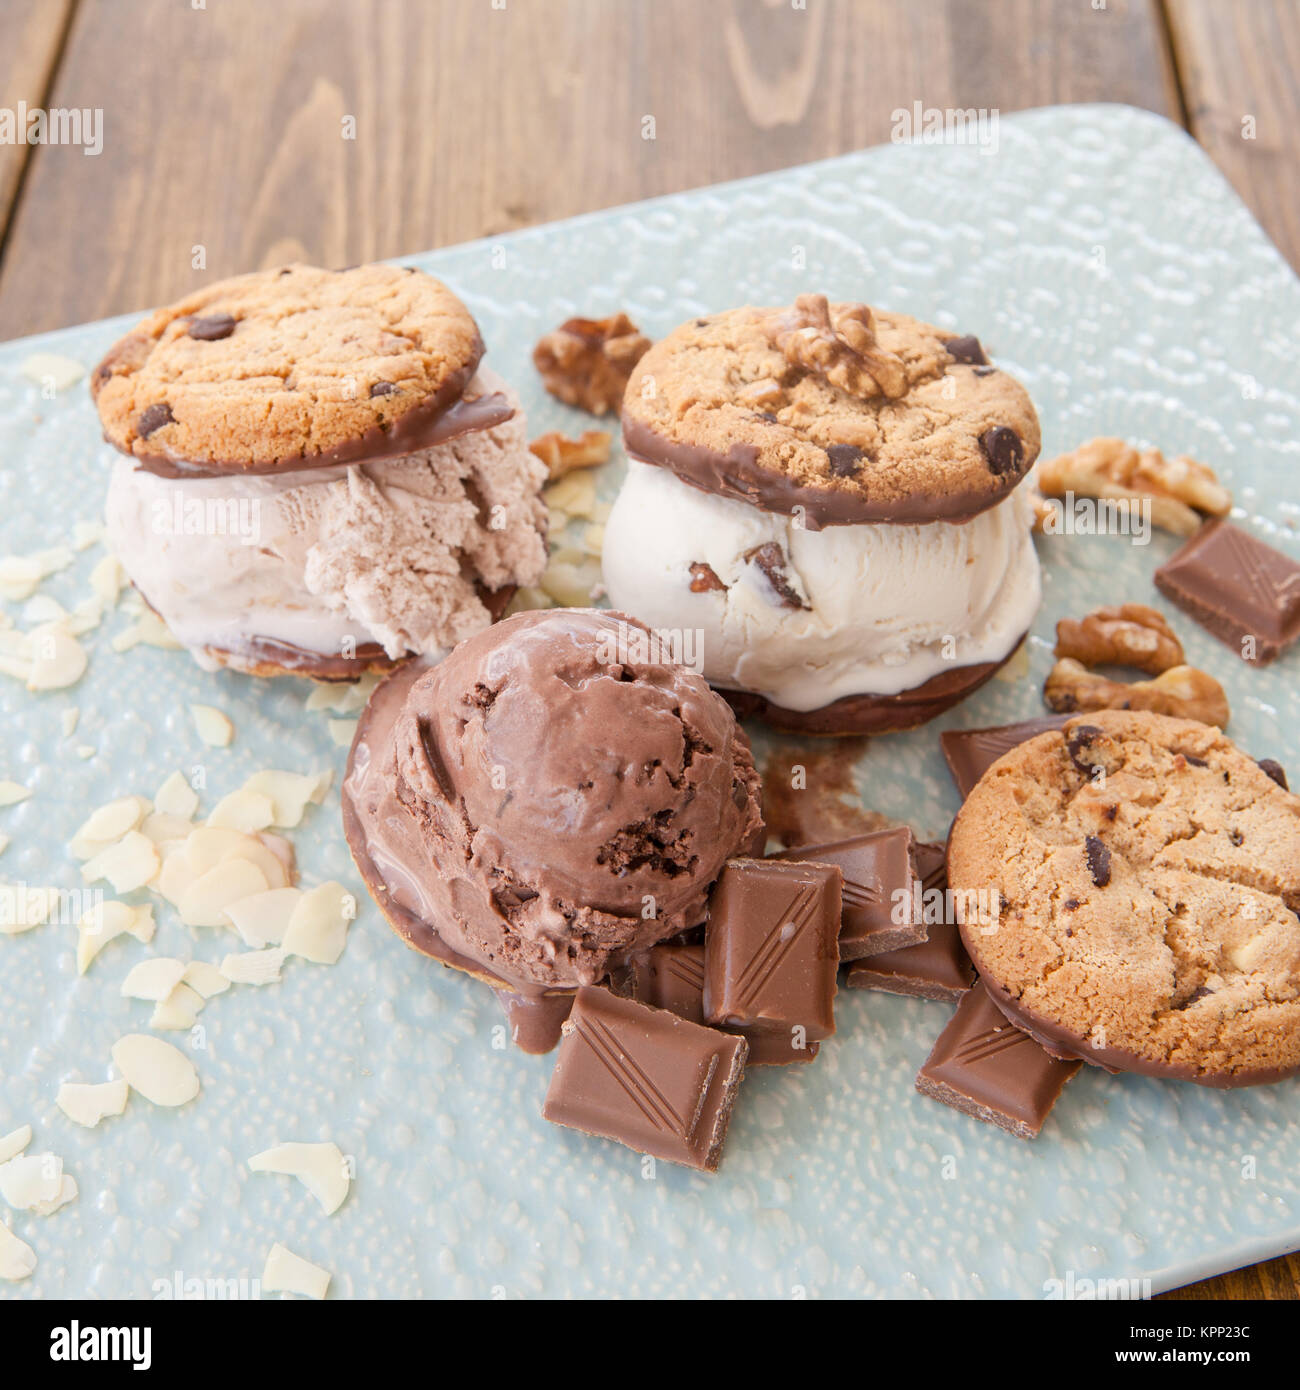 Eiscreme Sandwiches mit Schokolade und Nuessen Stock Photo - Alamy